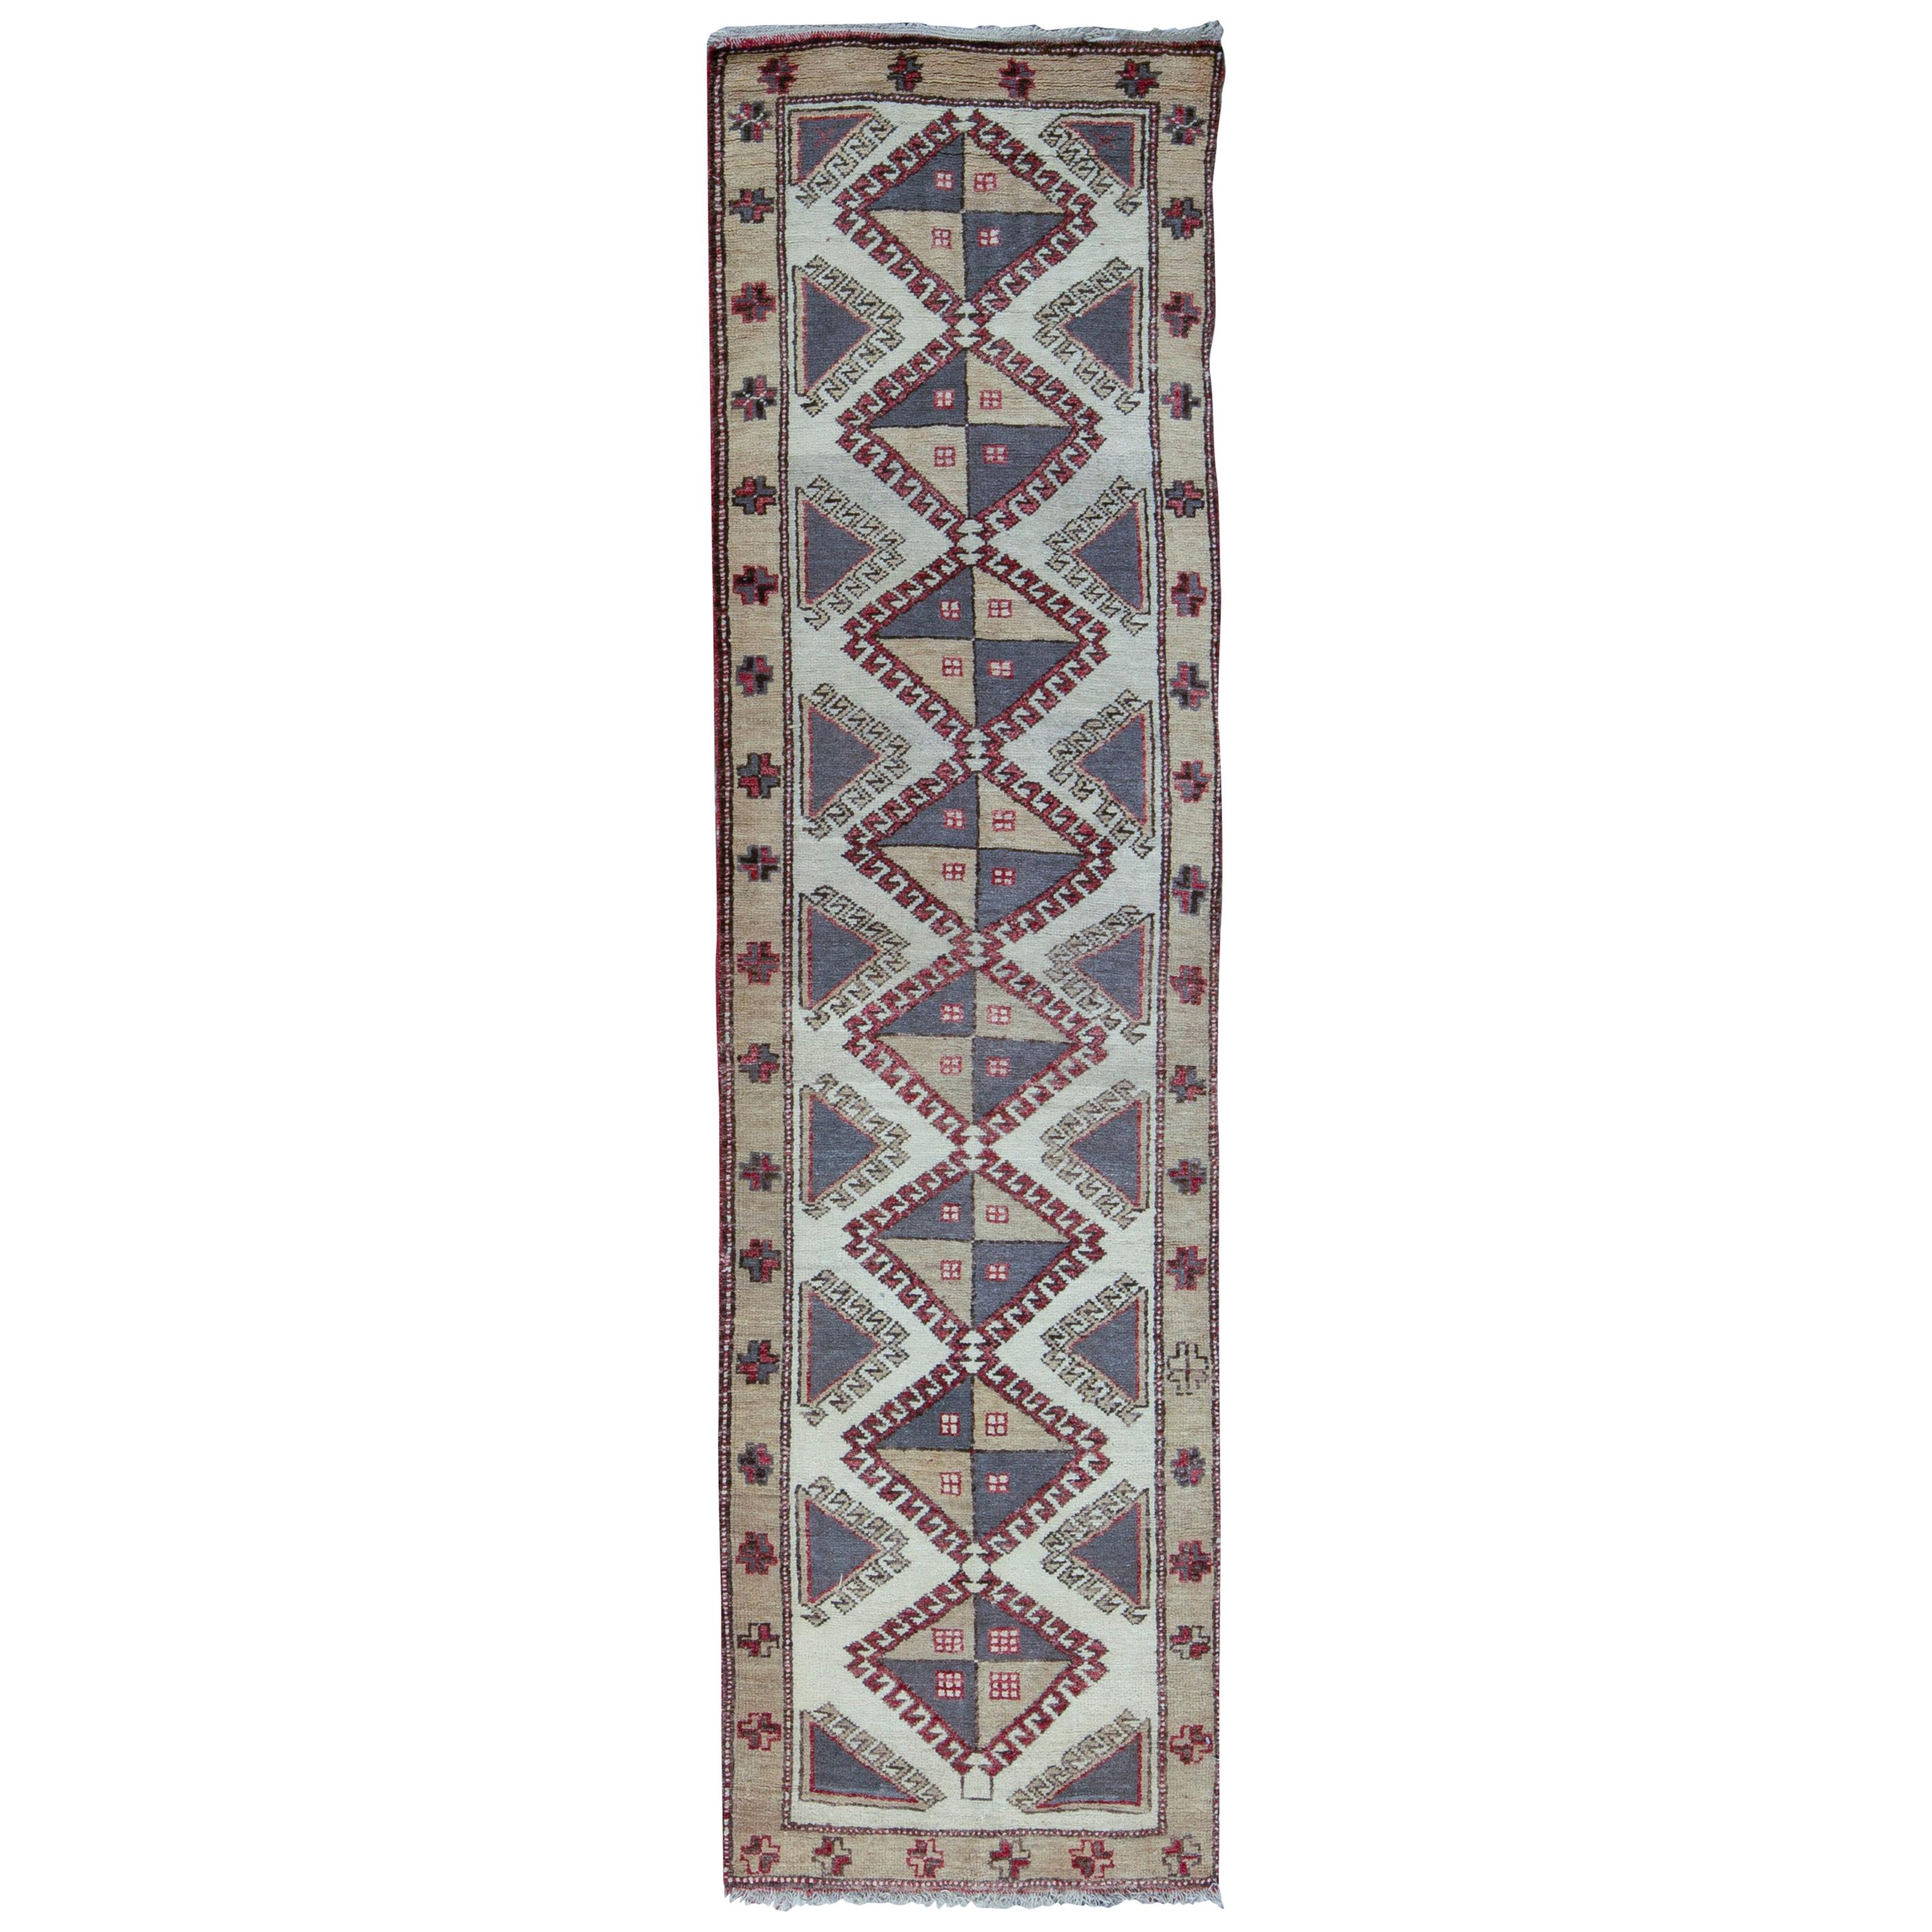 Tapis de sol traditionnel en laine tissée à la main 2'6 x 9'8